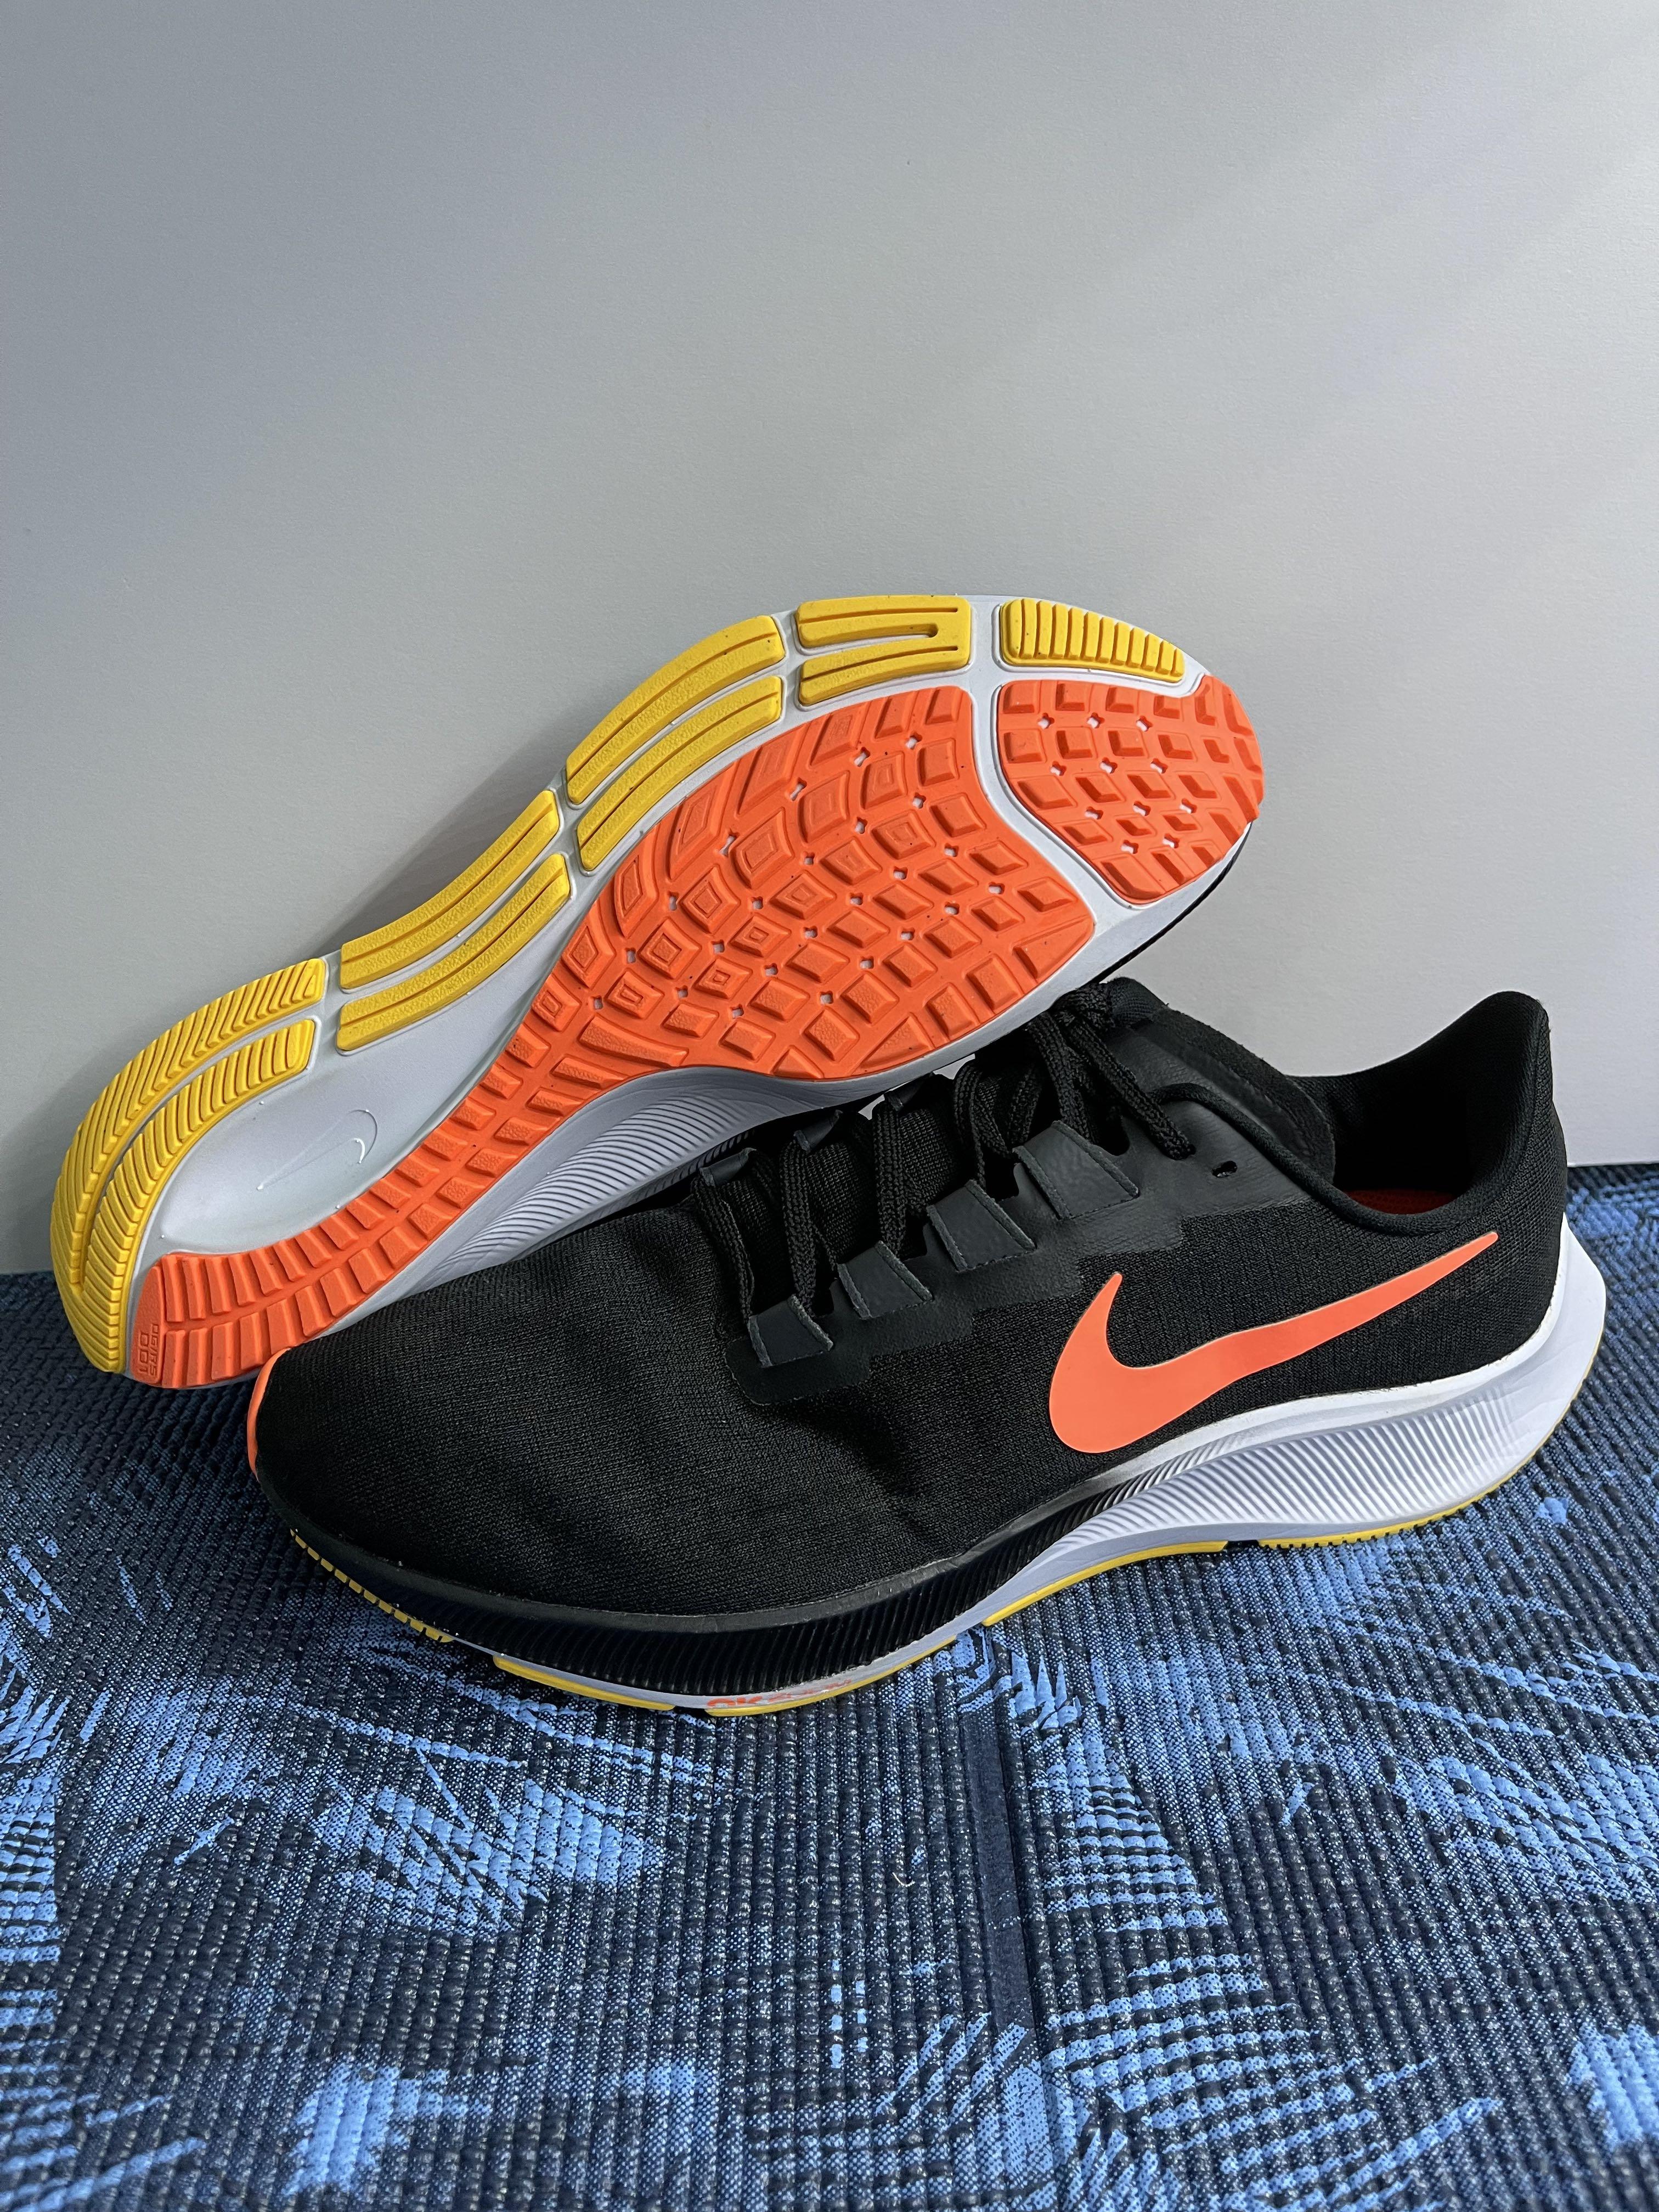 Nike Air Zoom Pegasus 37 'Black Mango' Running Shoe BQ9646-010 Men’s Size 11.5